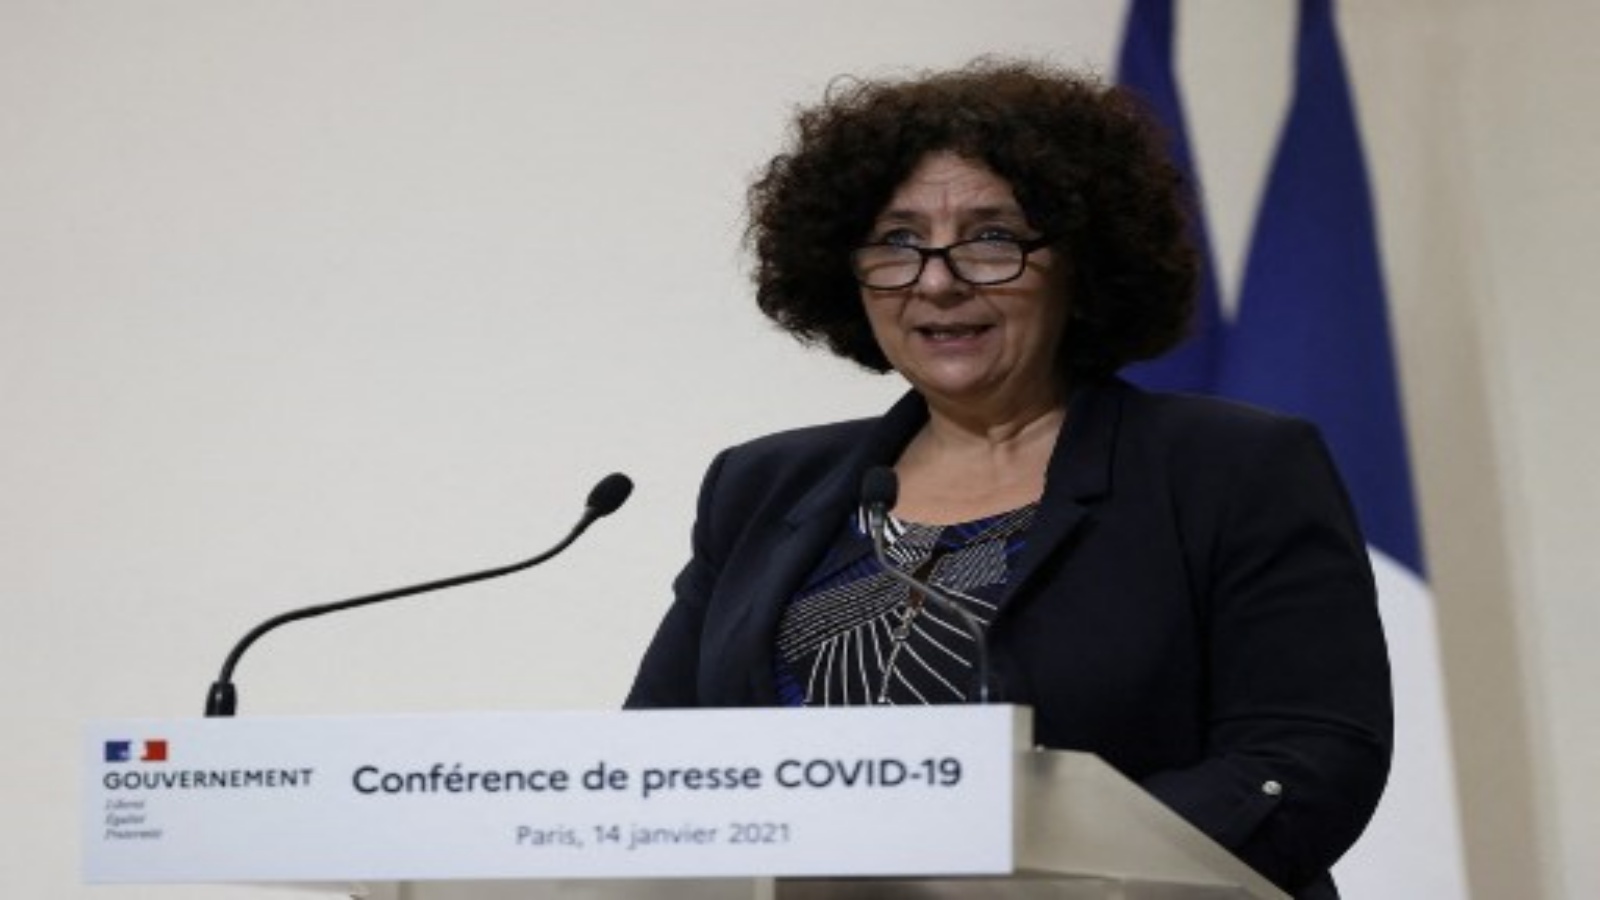  وزيرة التعليم العالي والبحث والابتكار الفرنسي فريدريك فيدال خلال مؤتمر صحفي في باريس 